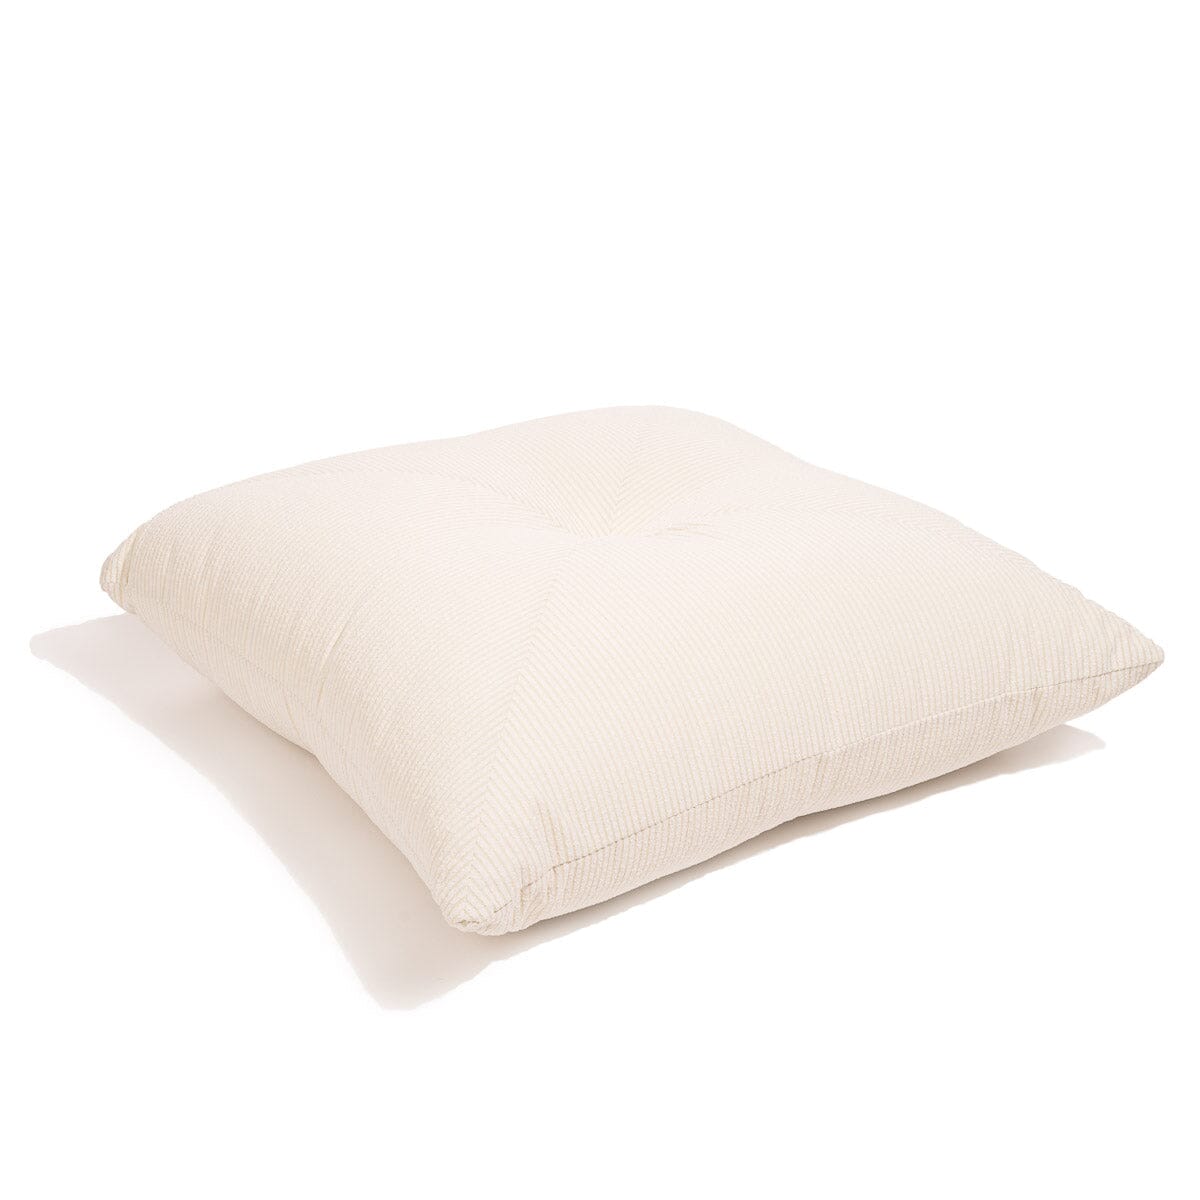 The Floor Pillow - Corduroy Antique White Floor Pillow Business & Pleasure Co 